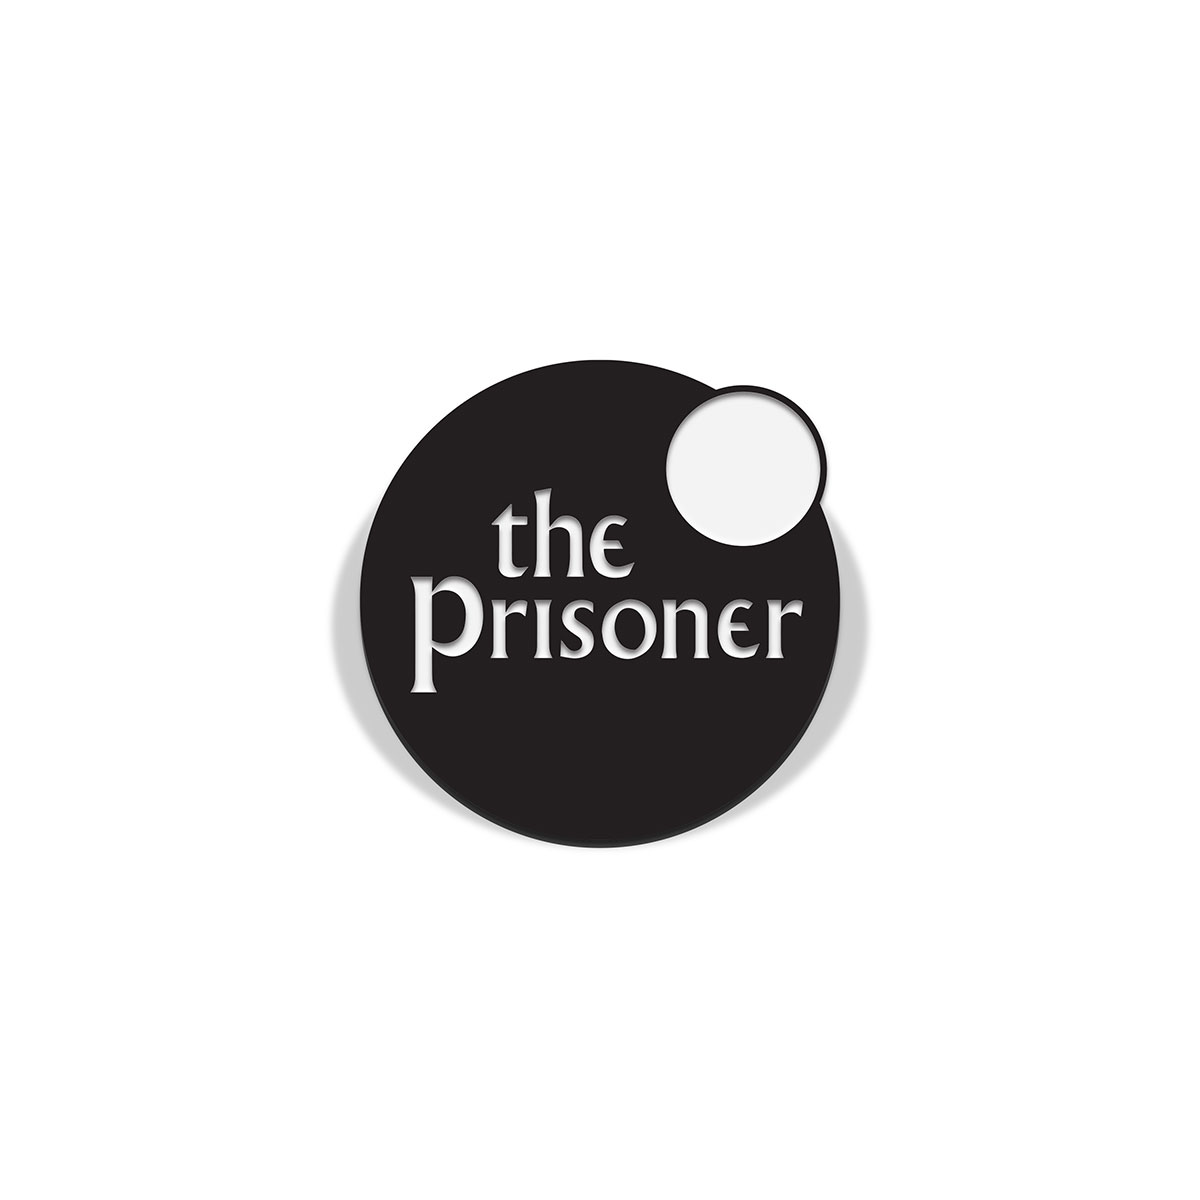 Vice Press' The Prisoner